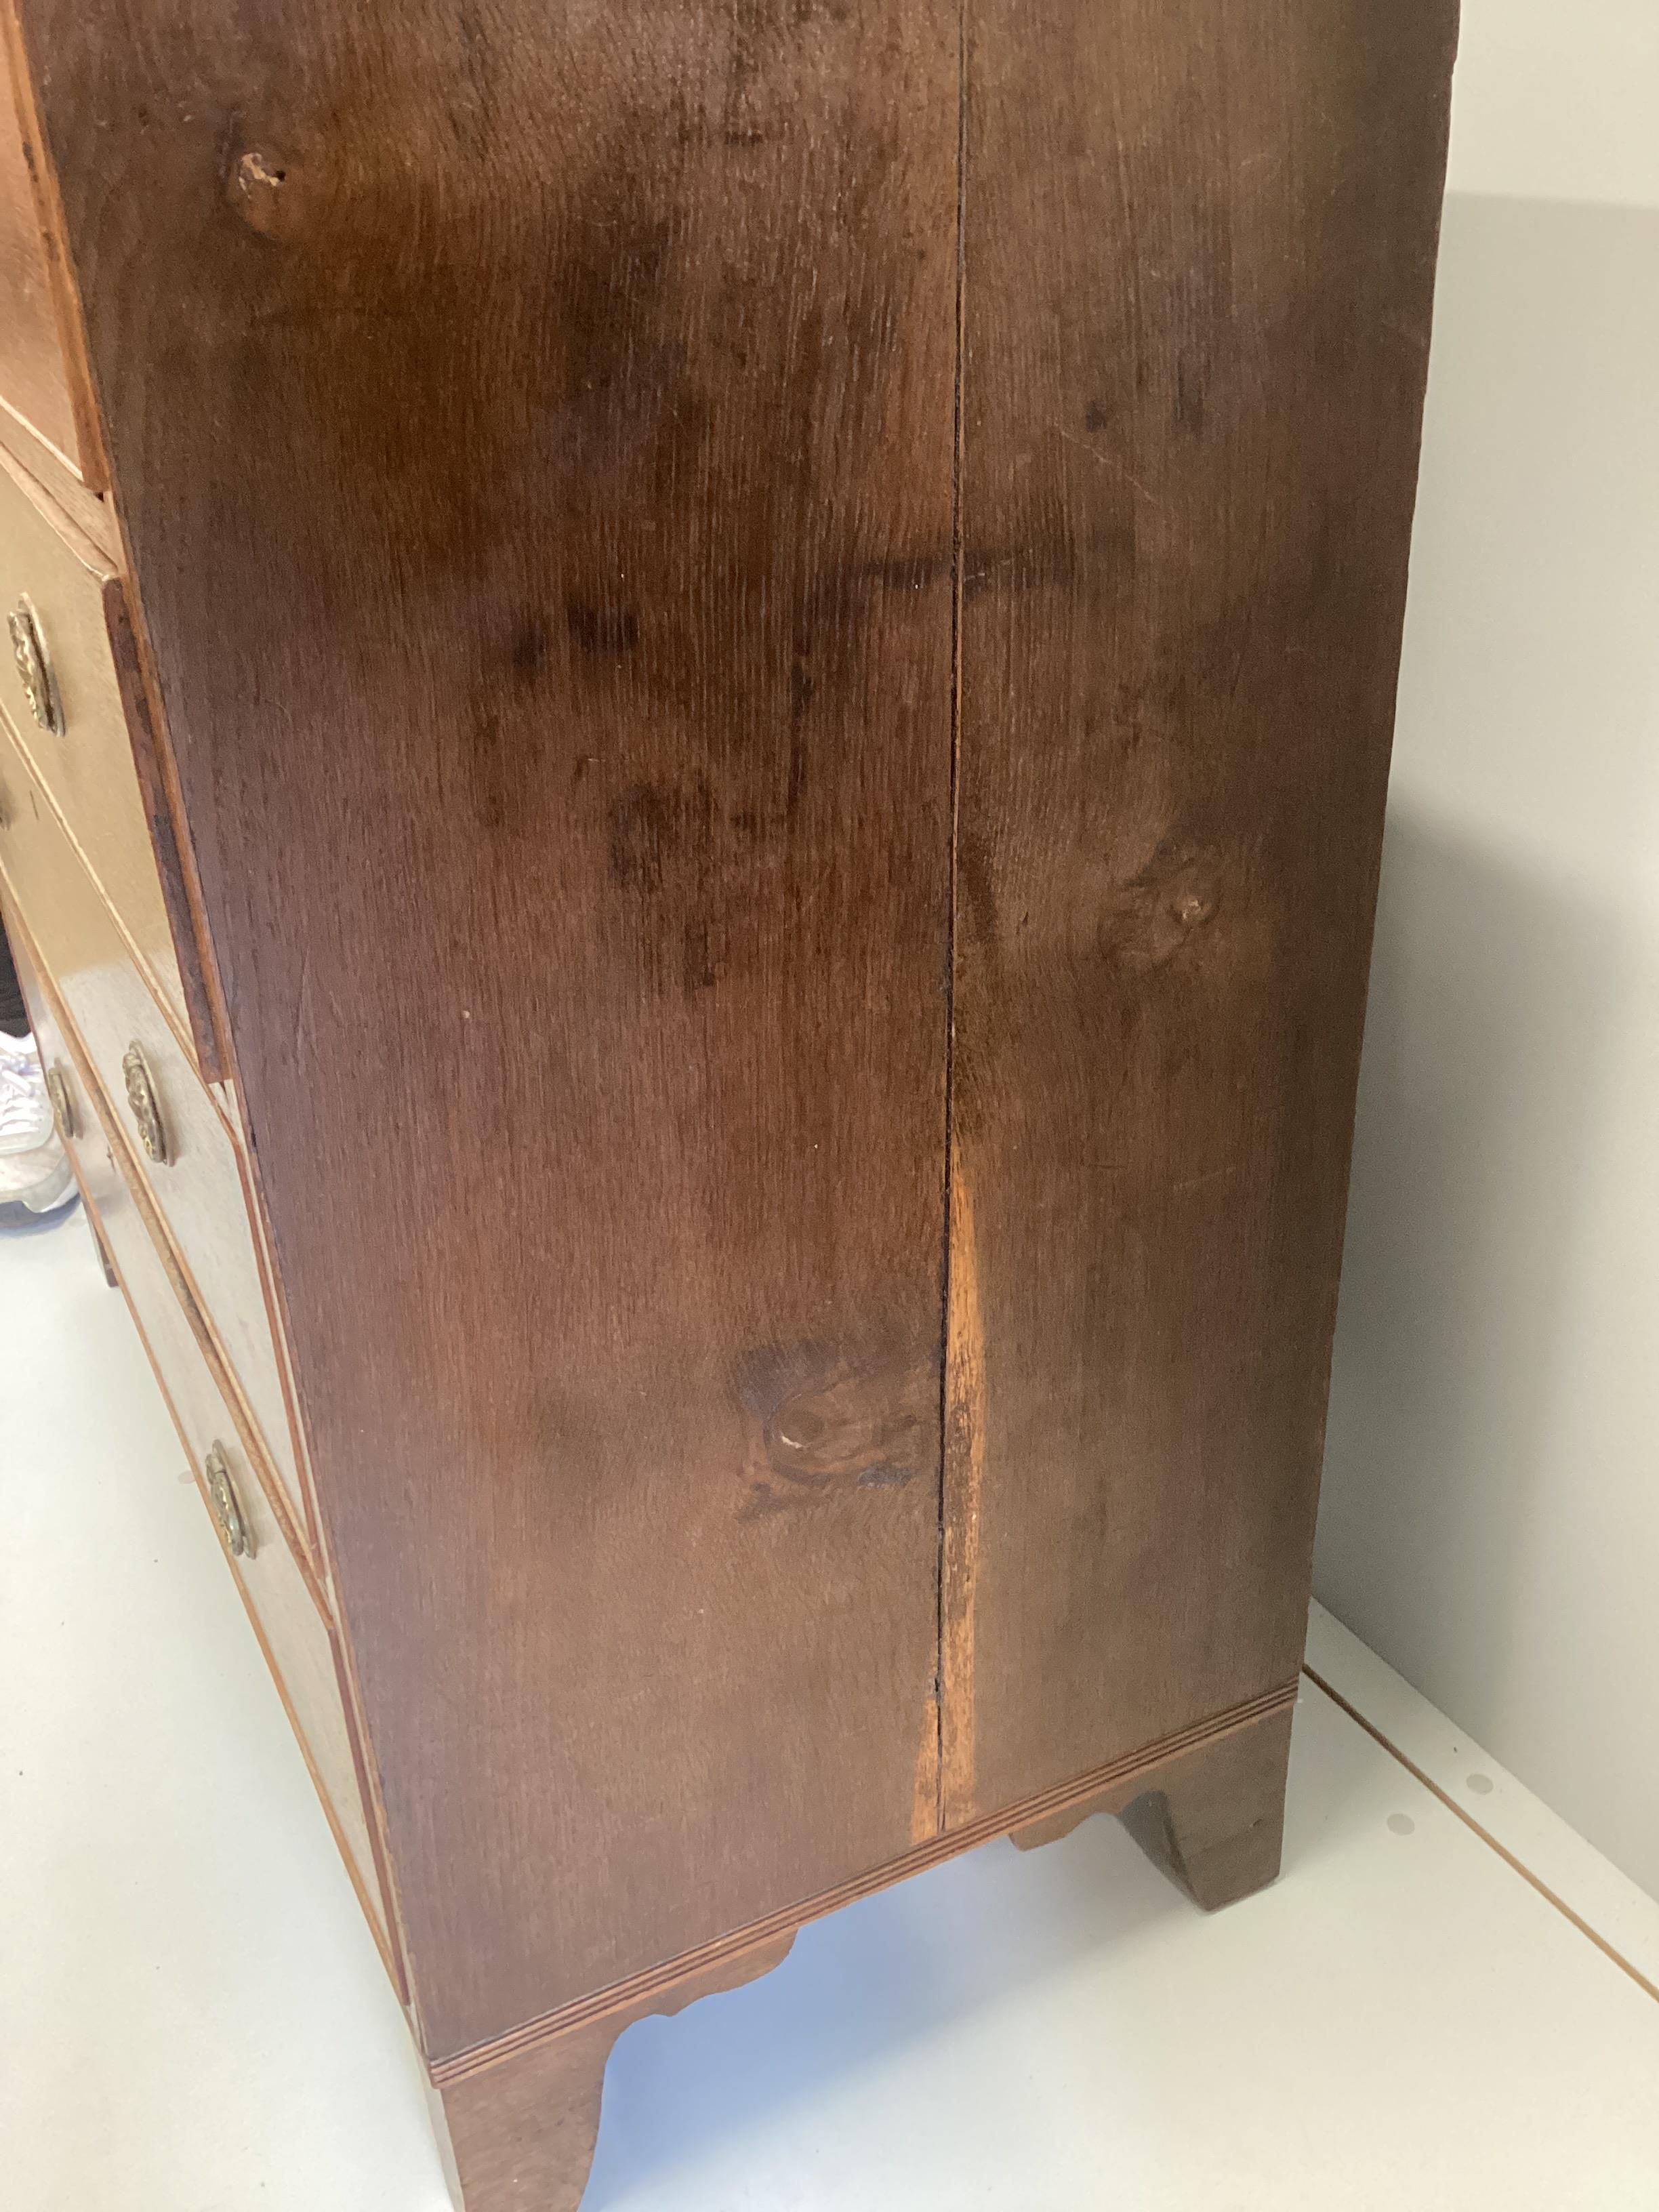 A Regency oak five drawer chest, width 107cm, depth 50cm, height 104cm